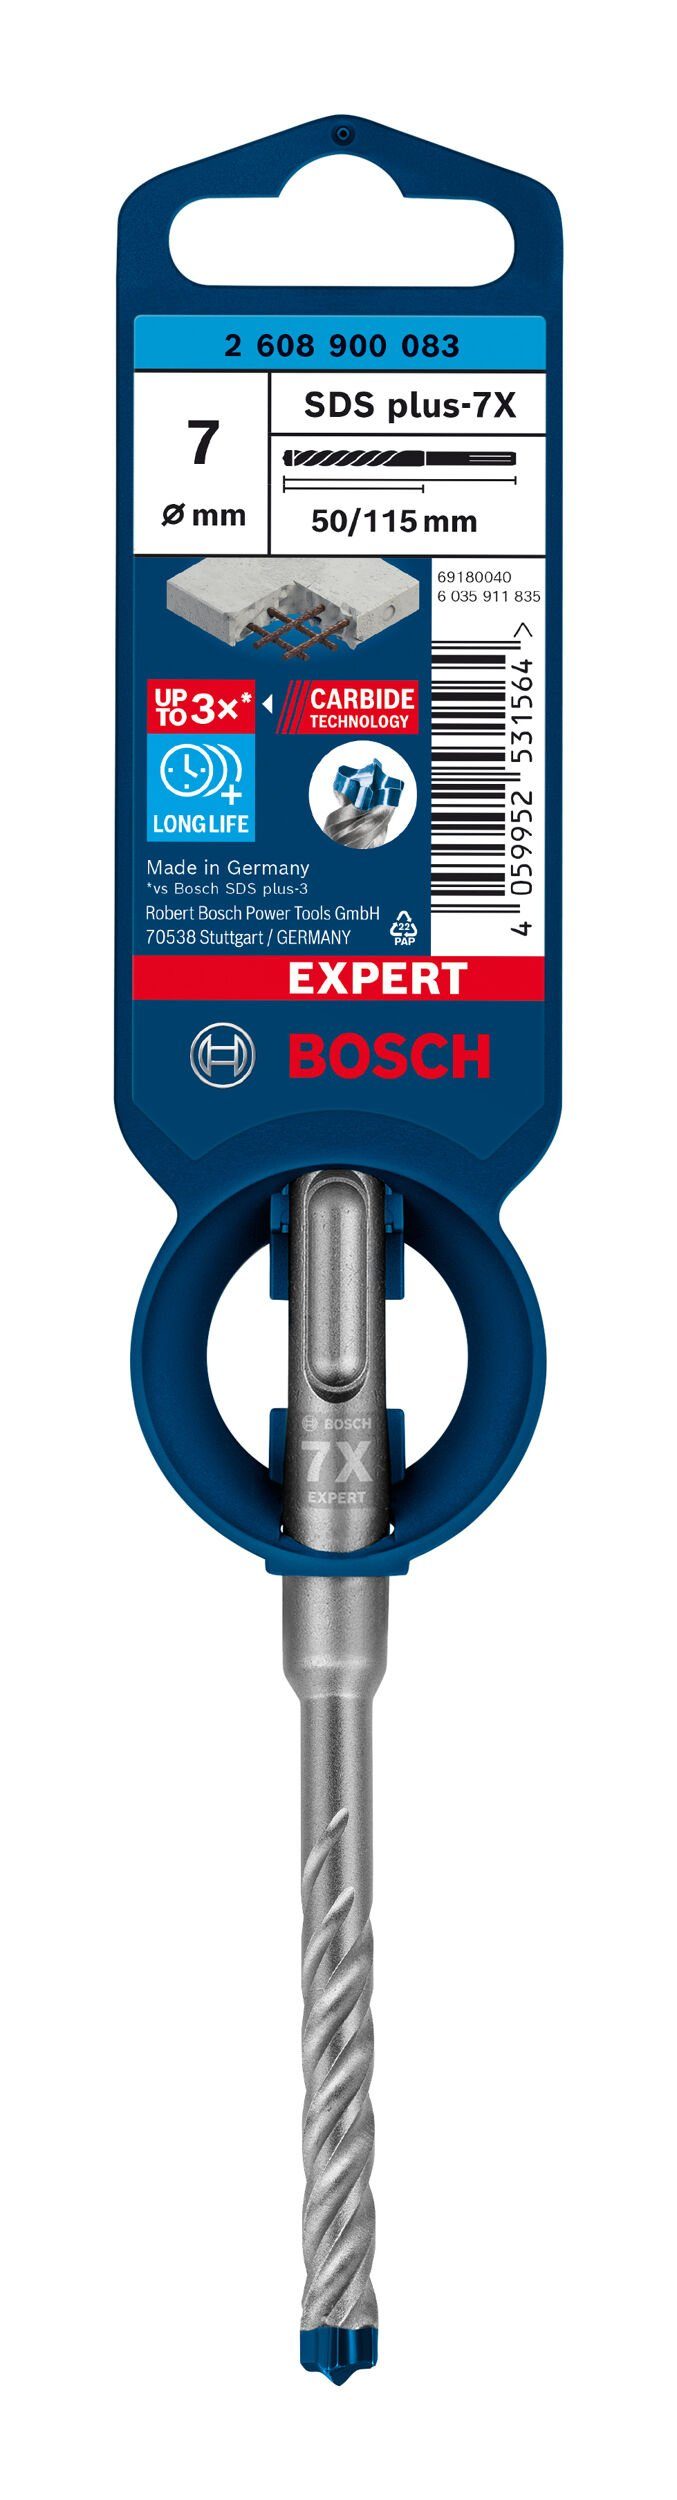 BOSCH Universalbohrer Expert mm 50 115 1er-Pack SDS - 7 x - x Hammerbohrer plus-7X